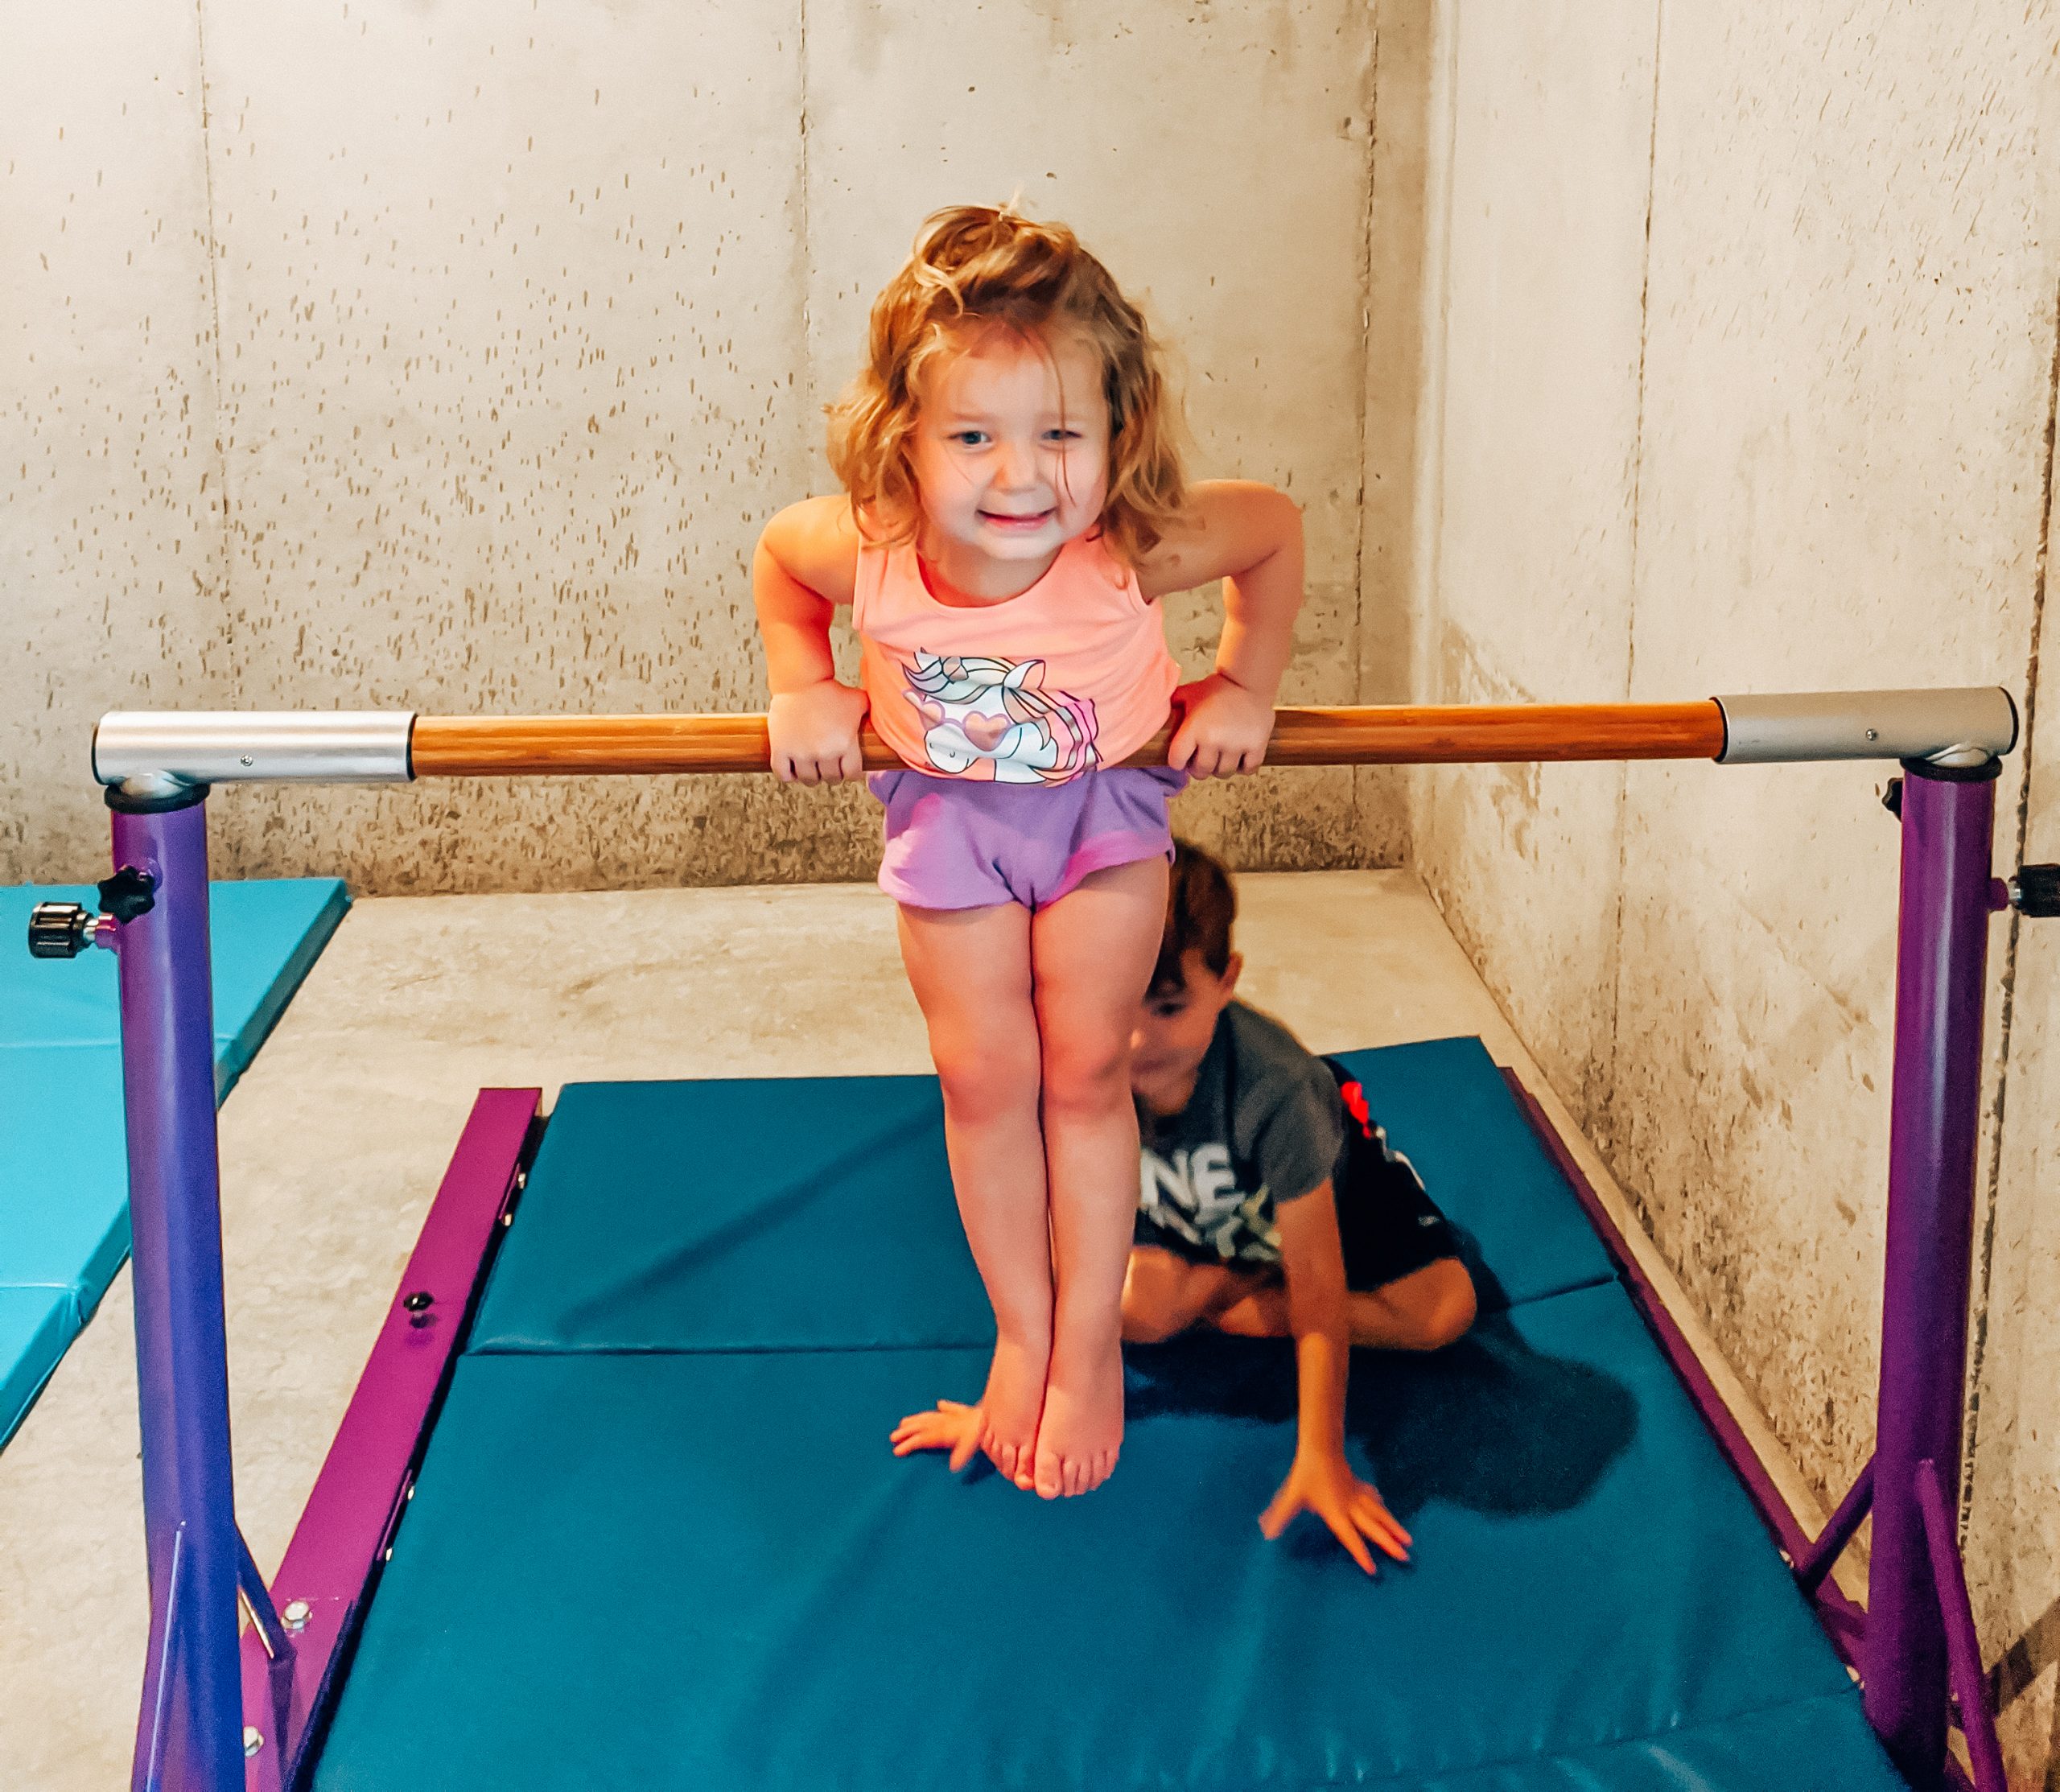 How To Make Home Gymnastics Equipment